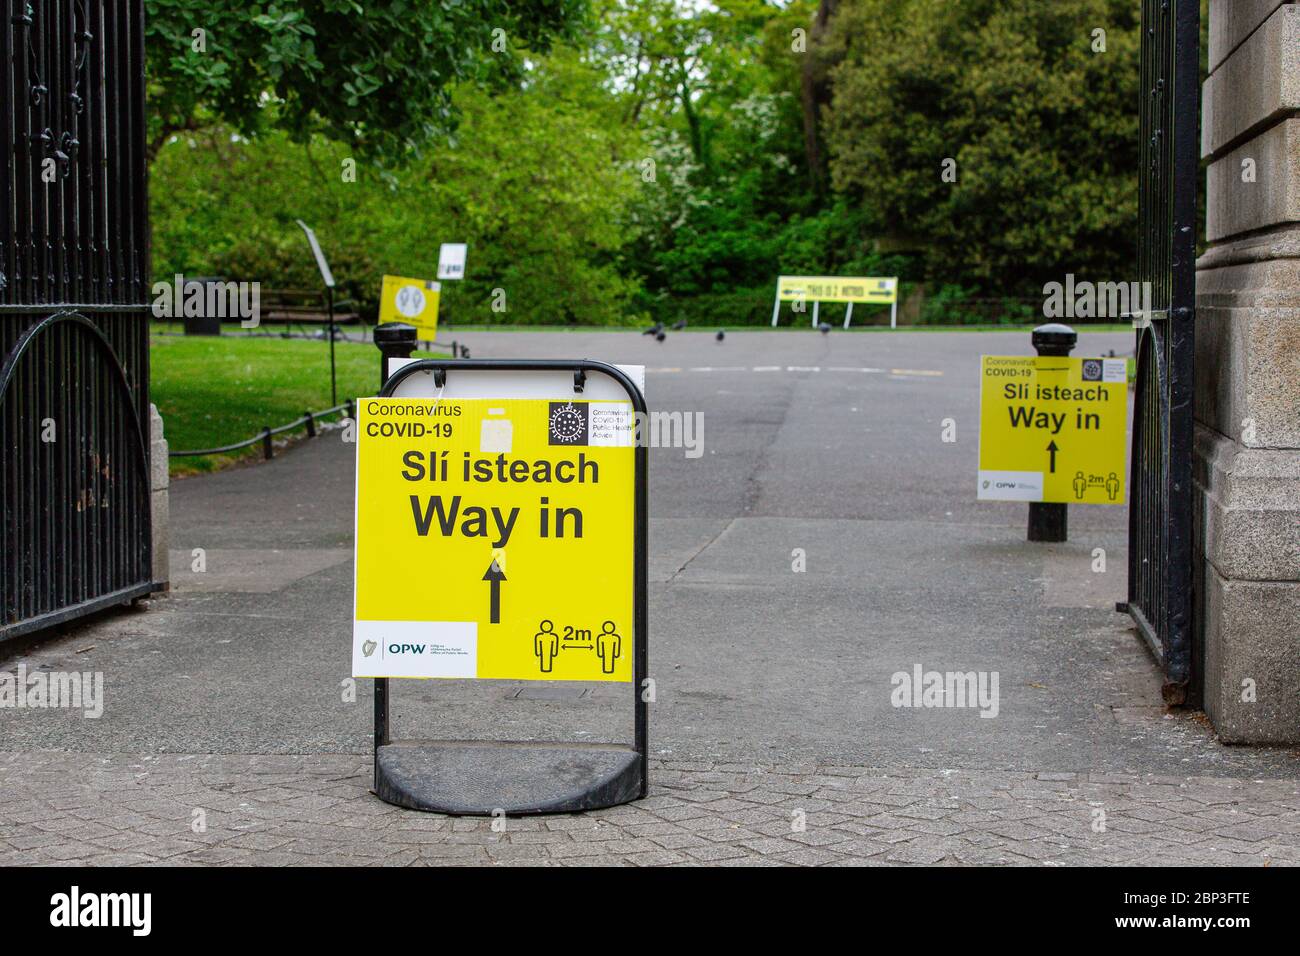 Dublino, Irlanda. Maggio 2020. Segnaletica gialla di sola andata per il sistema Coronavirus Covid-19 all'ingresso del St Stephen's Green Park di Dublino. Foto Stock